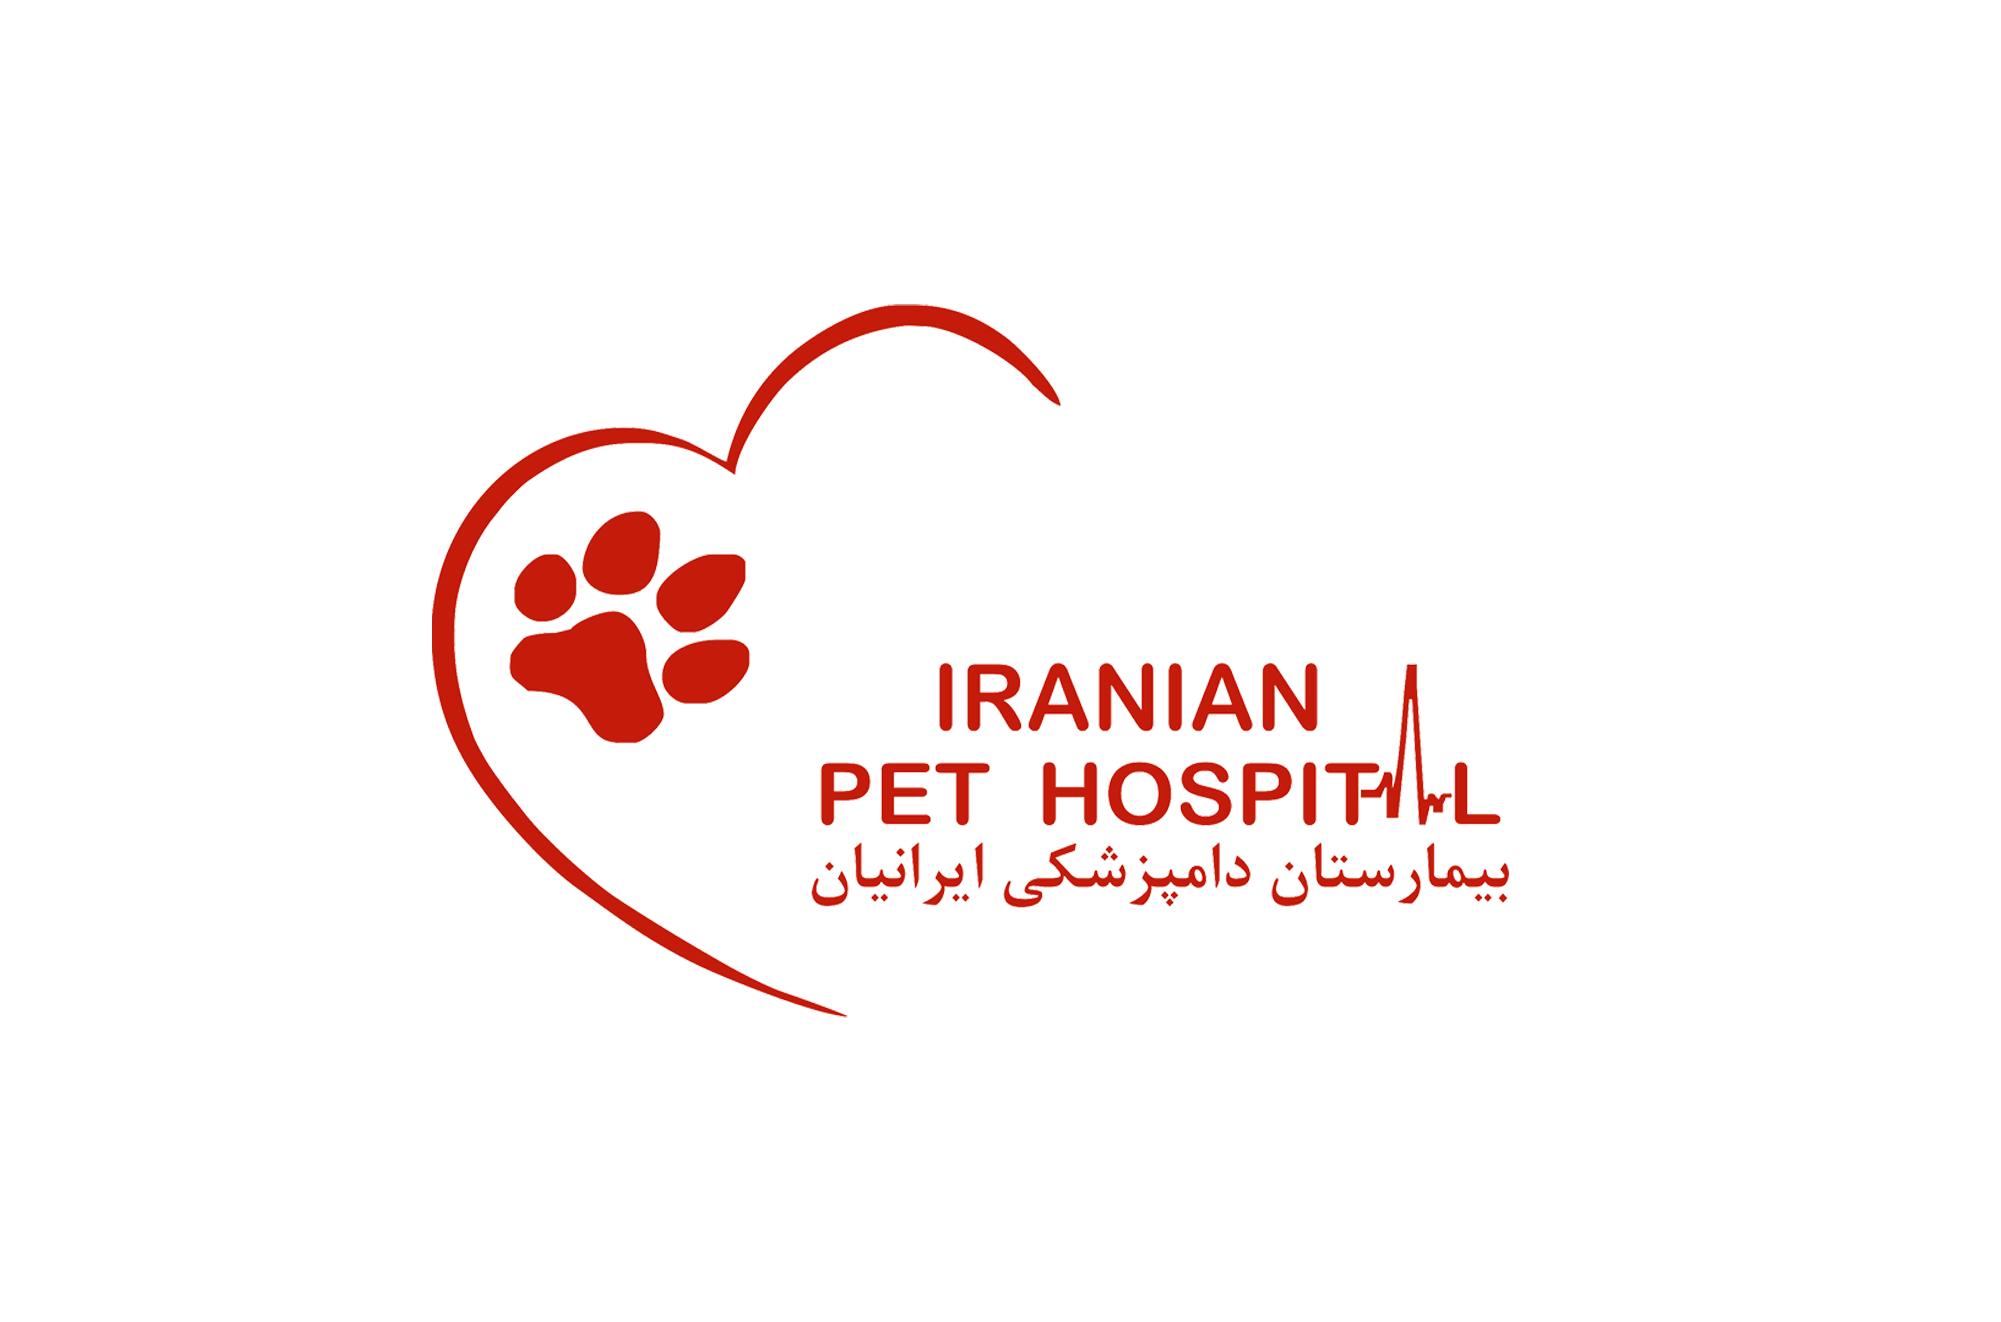 بیمارستان دامپزشکی ایرانیان